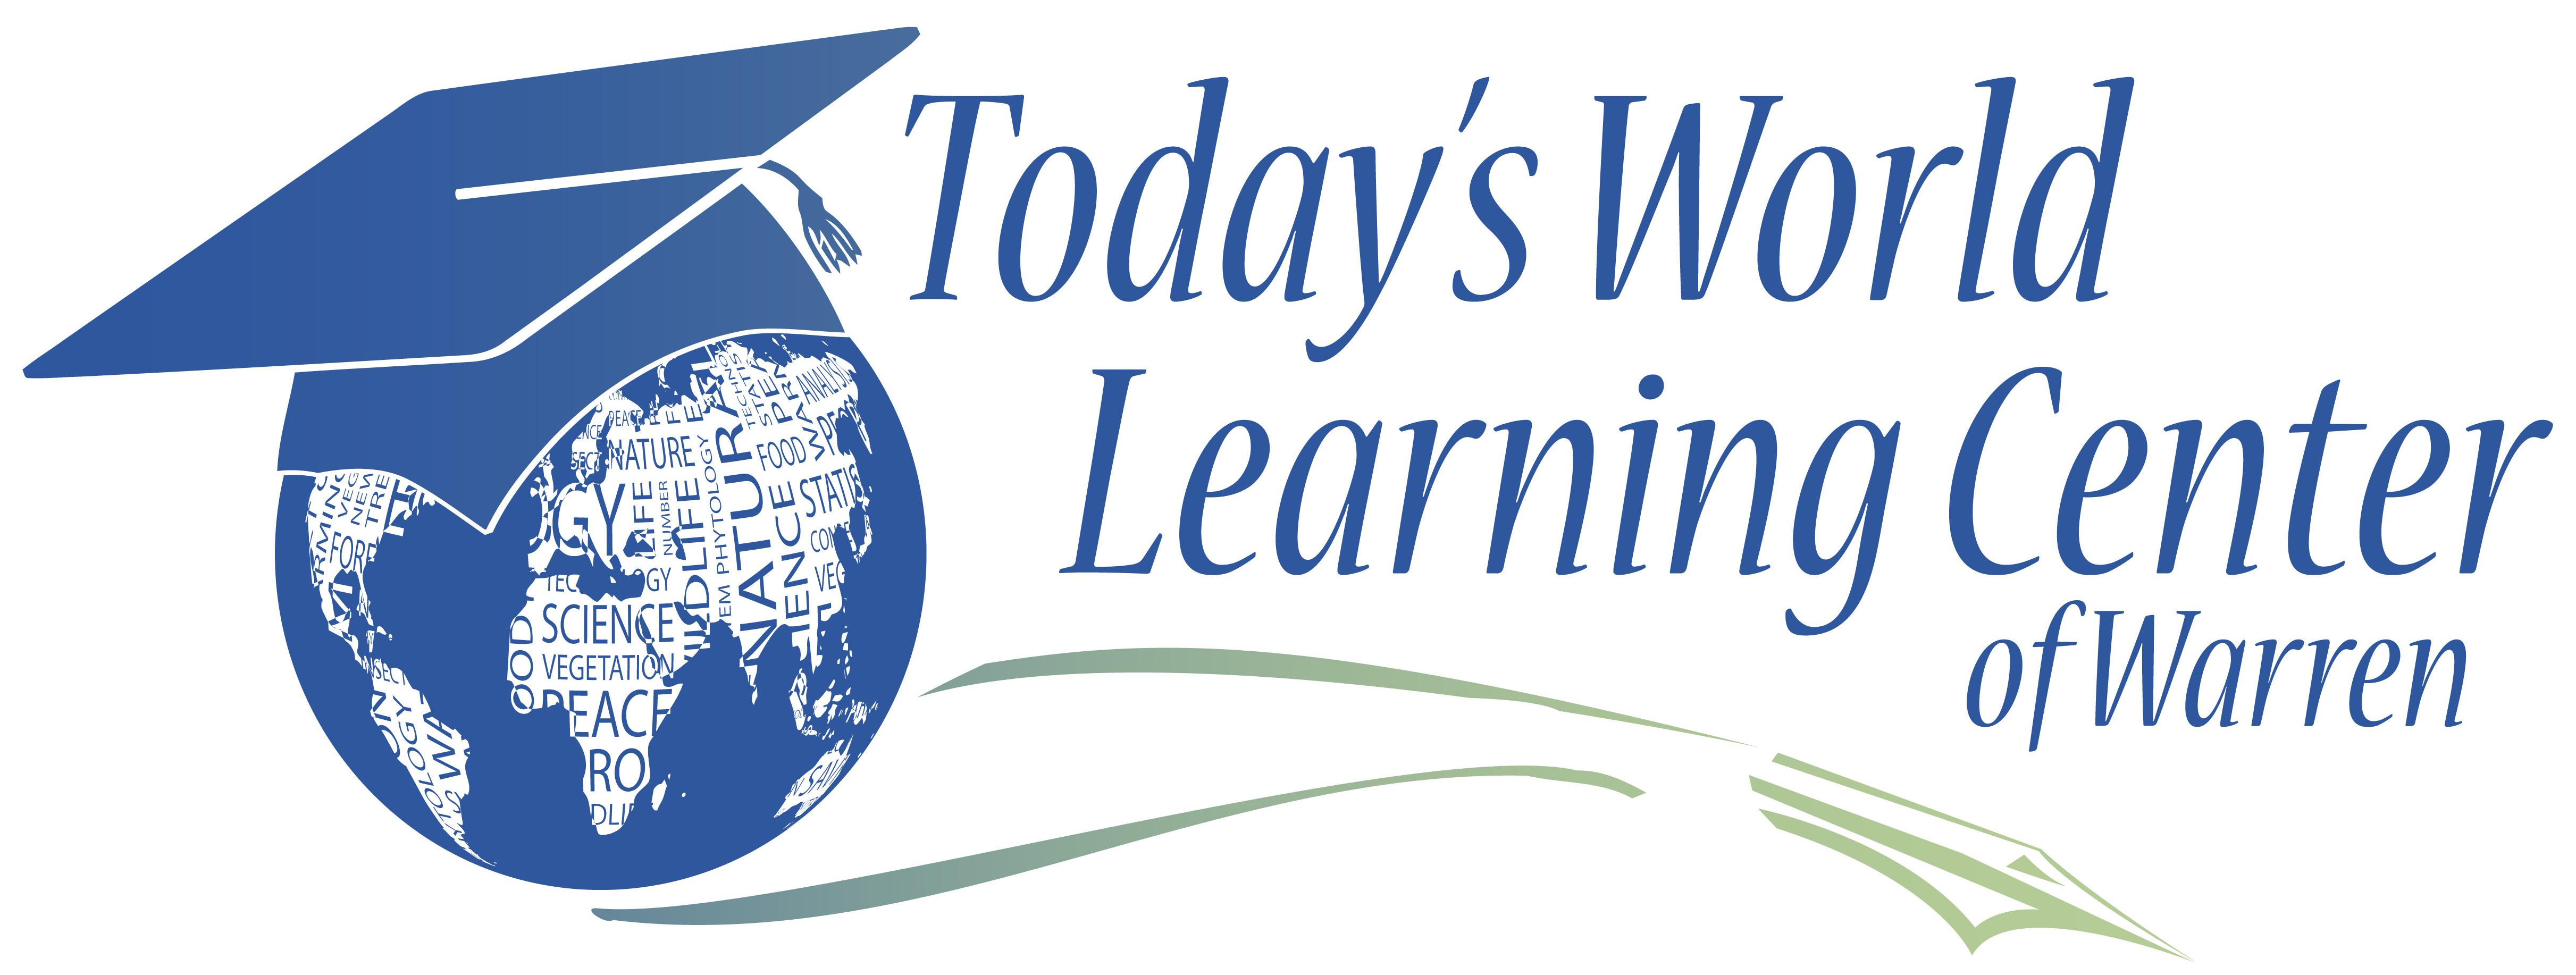 Today's World Learning Center of Warren Logo